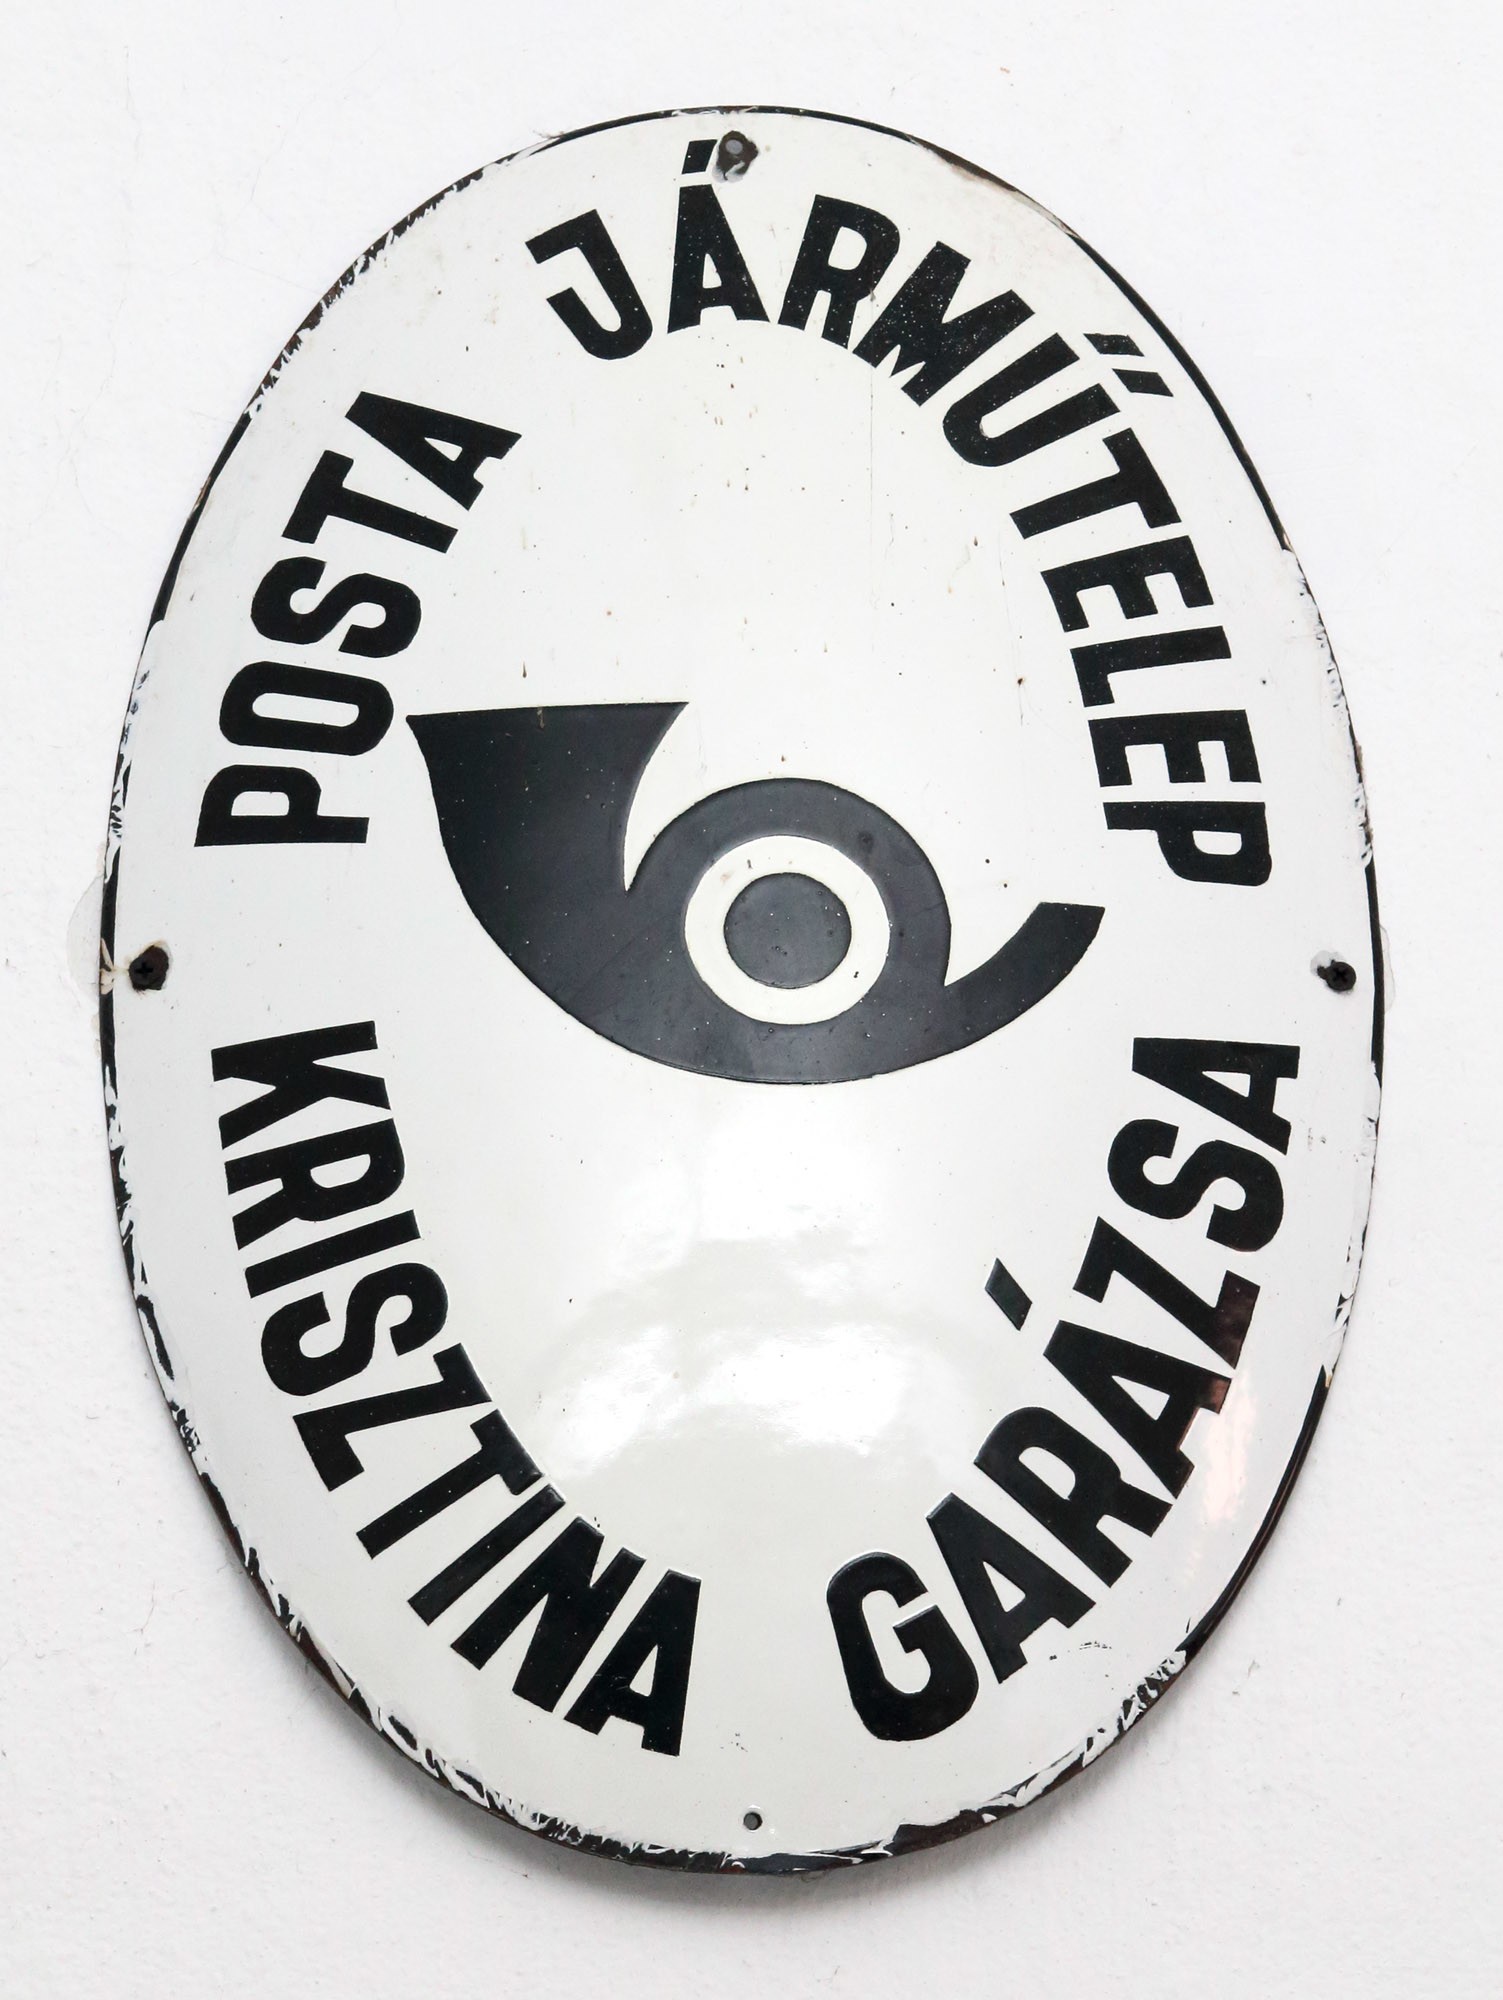 Címertábla „POSTA JÁRMŰTELEP KRISZTINA GARÁZSA” (Postamúzeum CC BY-NC-SA)